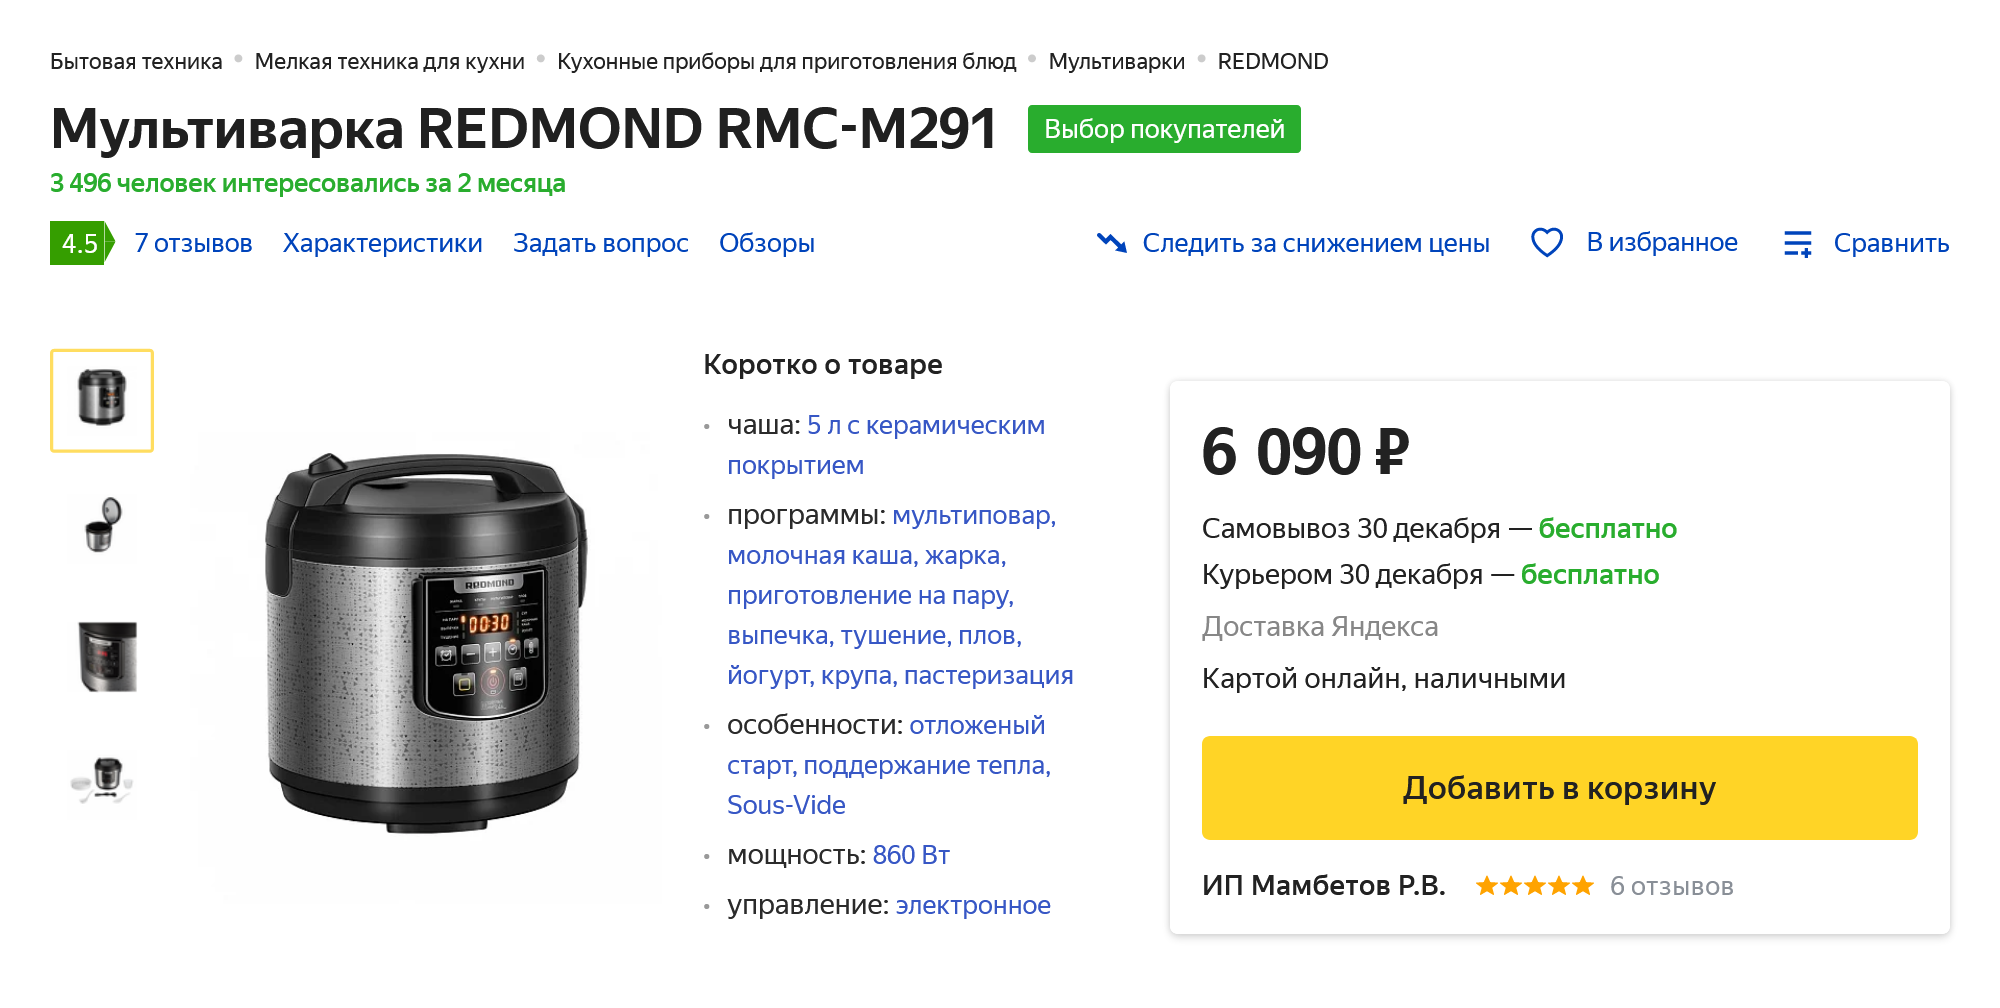 Похожая модель в магазине стоит 6500 ₽. Источник: market.yandex.ru